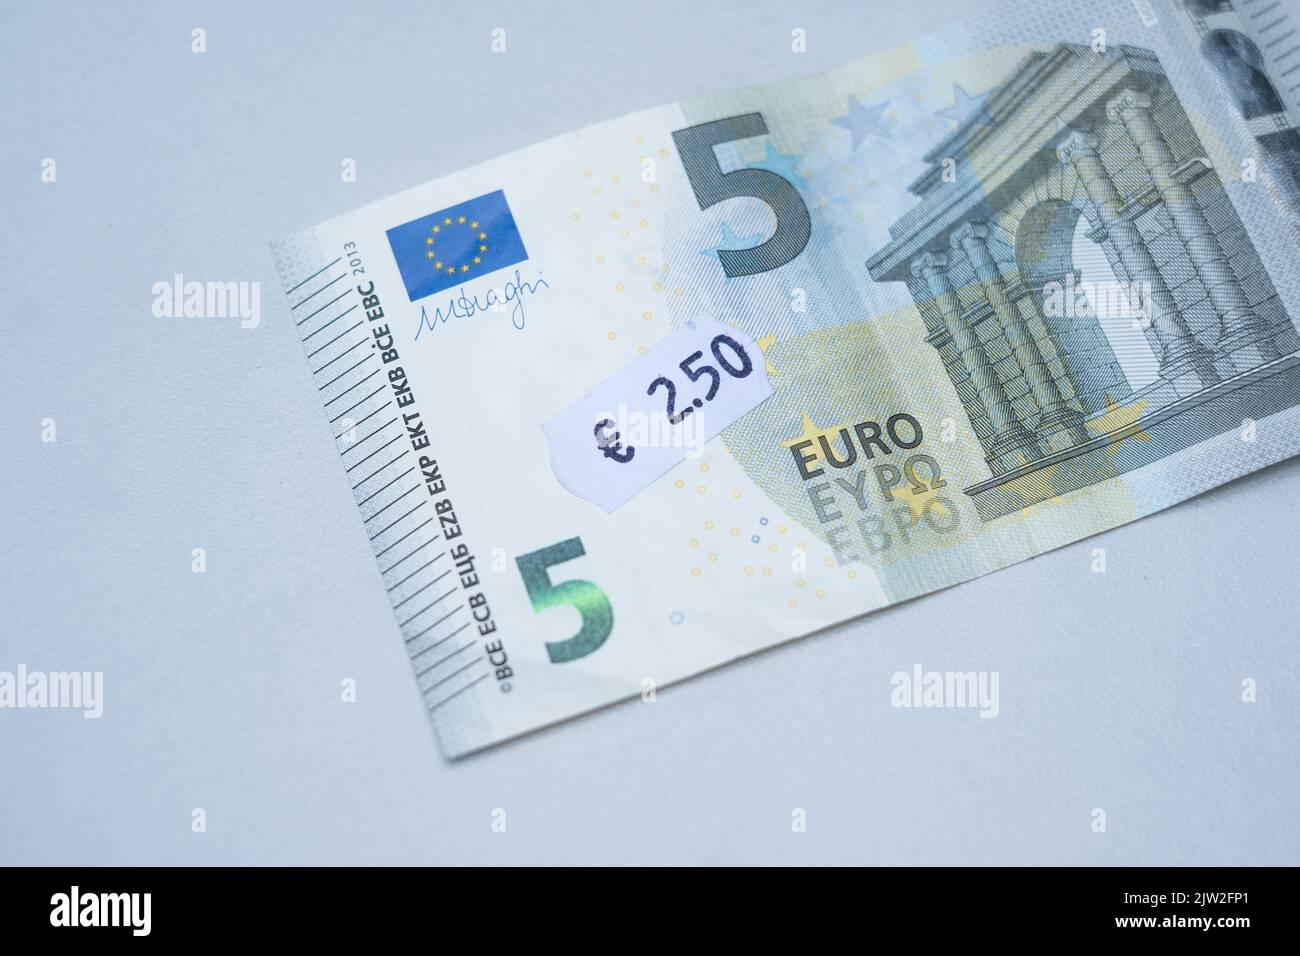 Fünf-Euro-Banknote mit 2 Euro 5 Cent Preisschild. Selektiver Fokus auf Etikett. Inflation in Europa, Hyperinflation, Abwertung des fiat-Geldkonzepts. Stockfoto